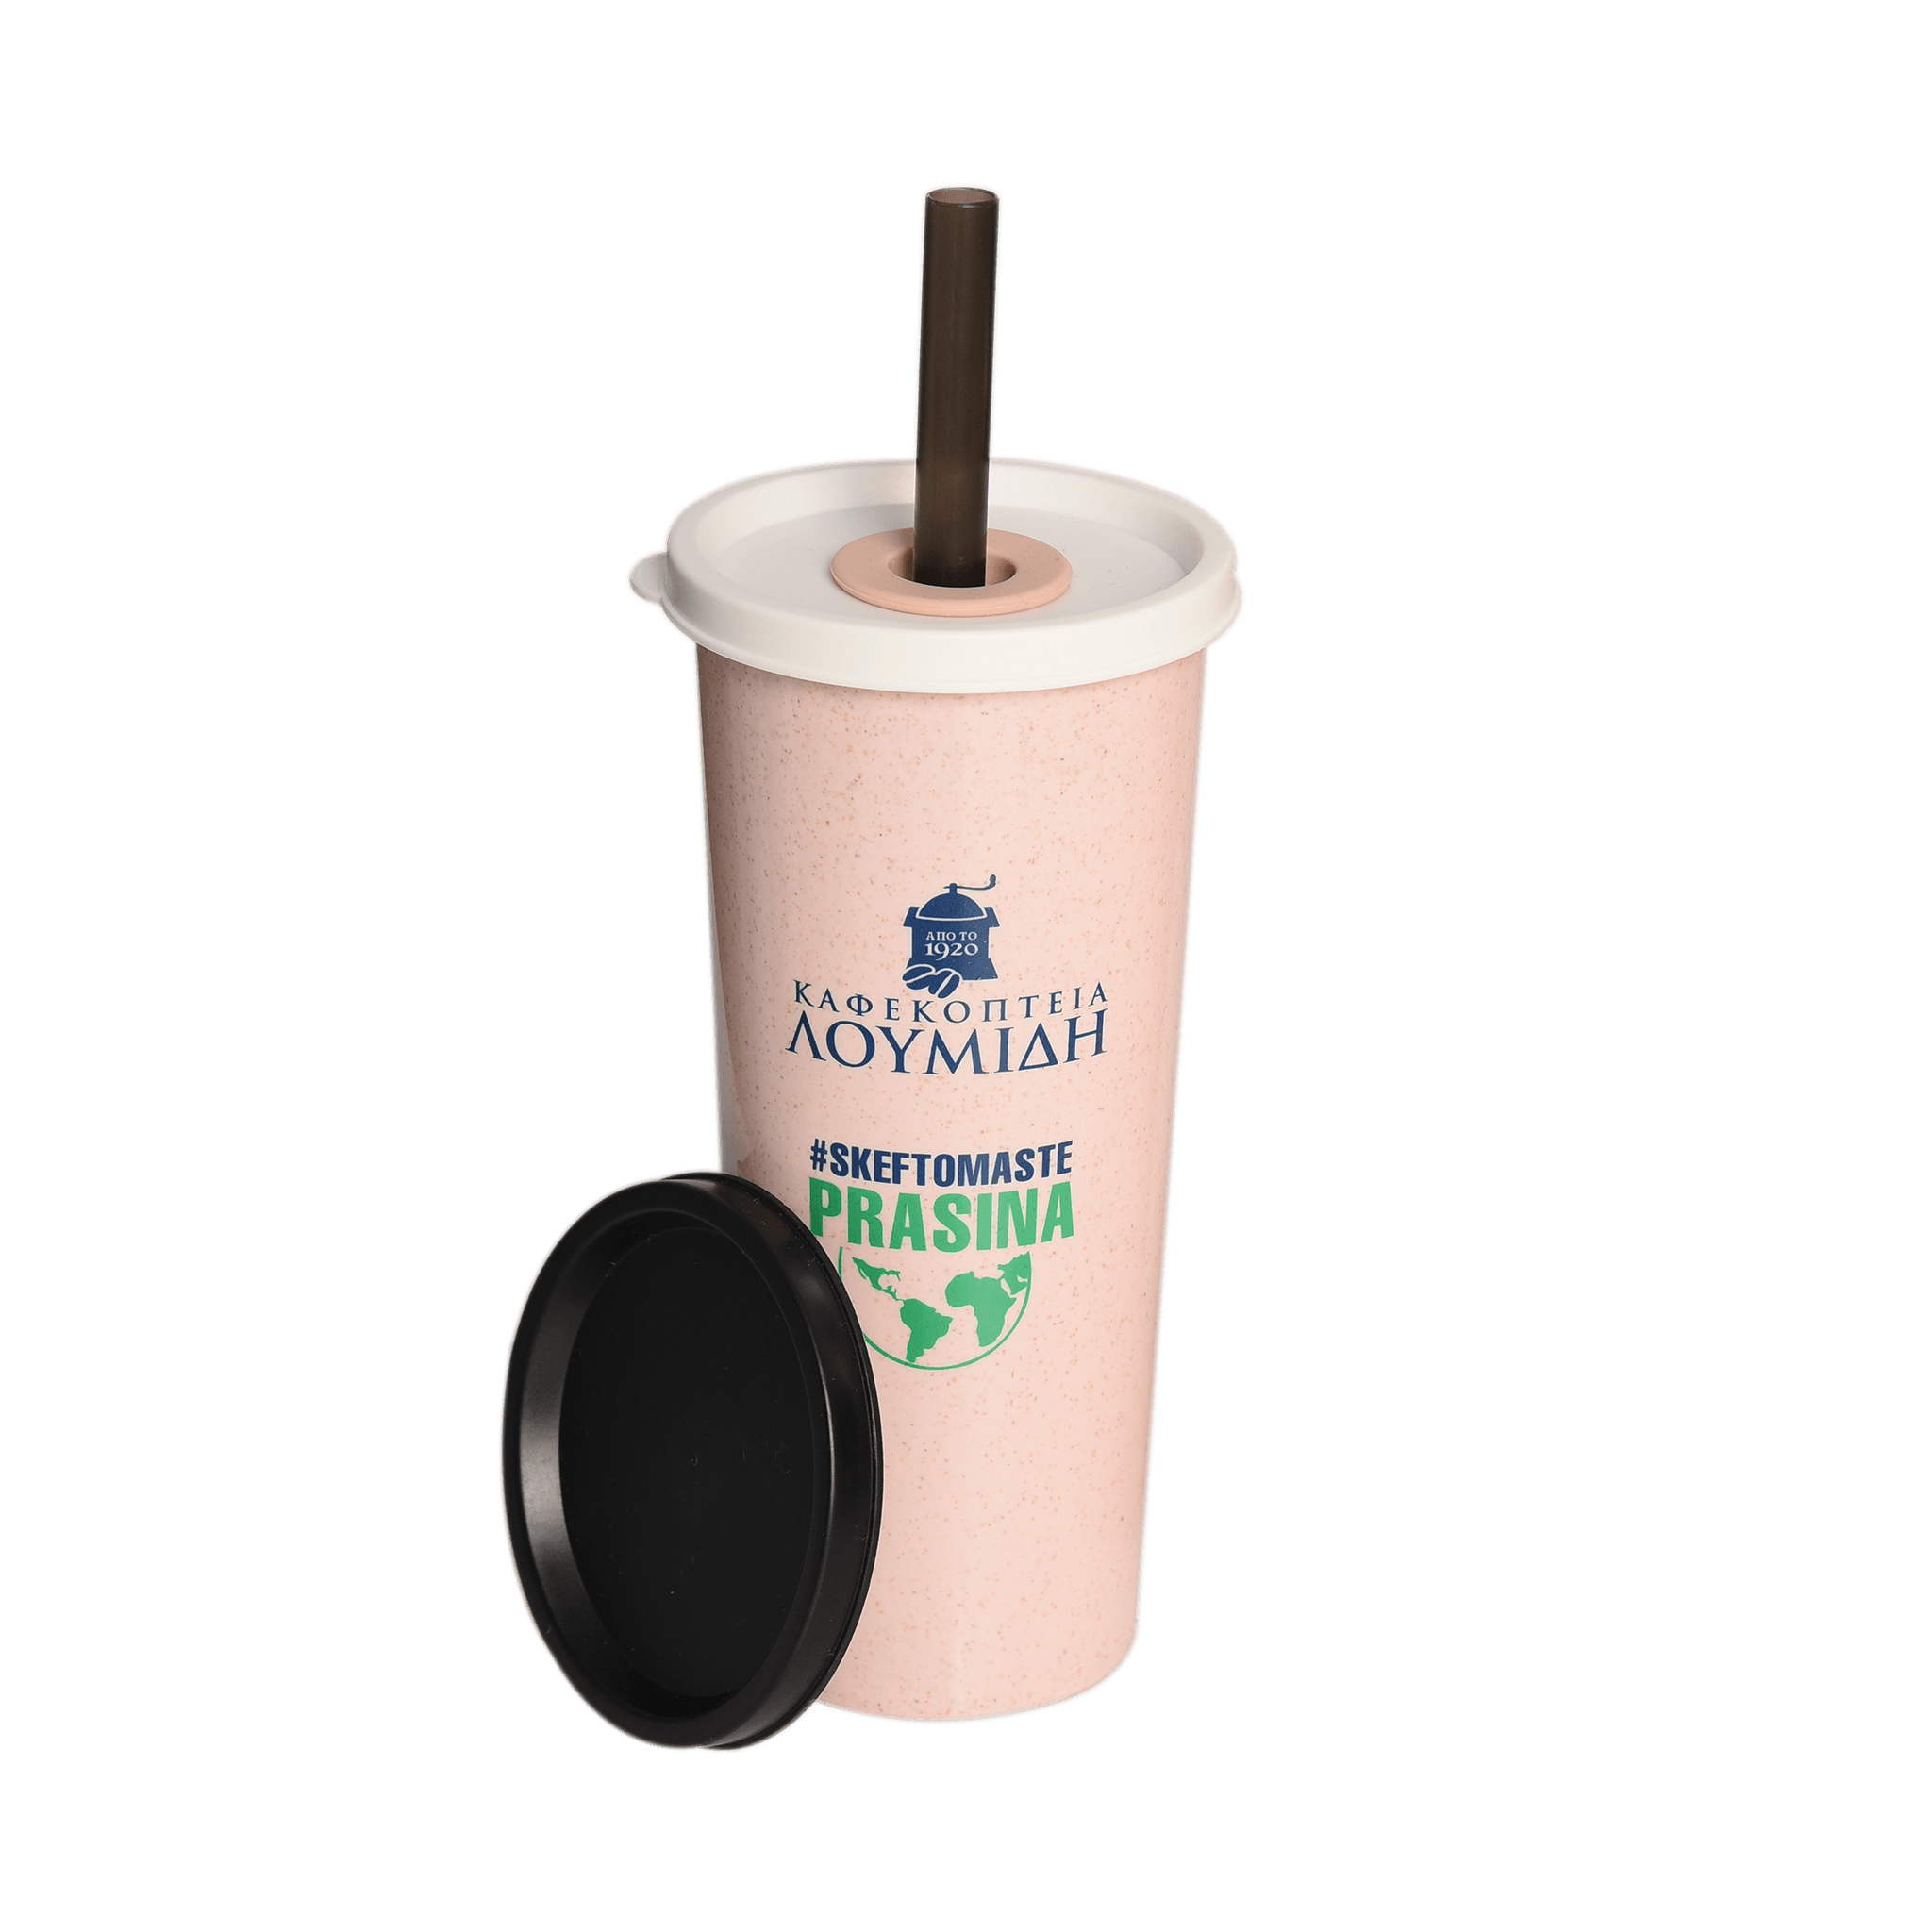 Επαναχρησιμοποιούμενο Ποτήρι Καφέ με Καλαμάκι "Καφεκοπτεία Λουμίδη" | Ροζ - Καφεκοπτεία Λουμίδη